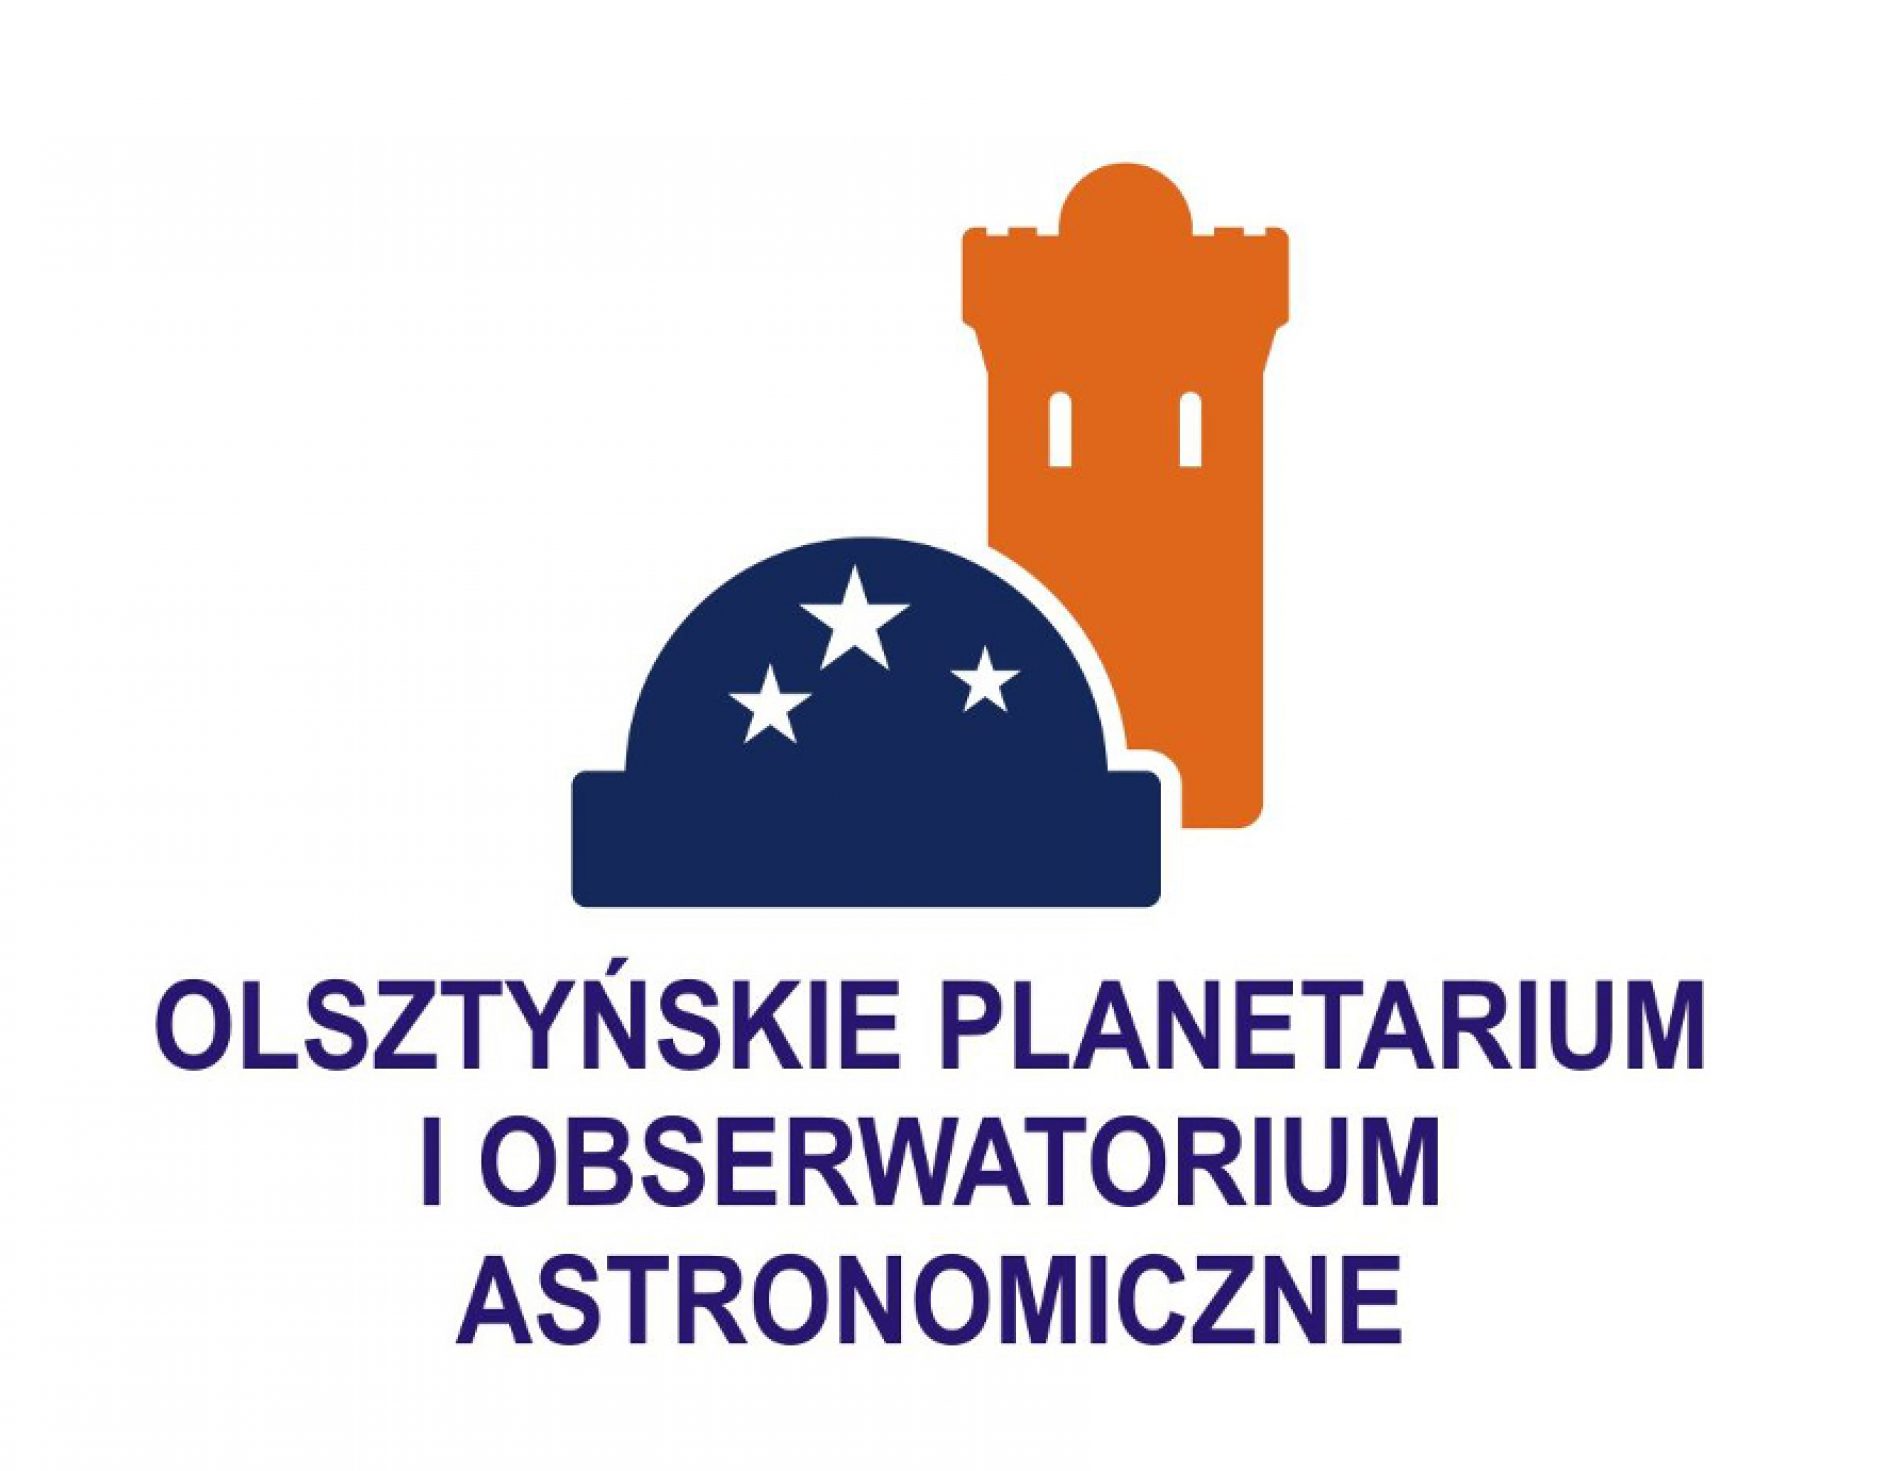 Olsztyńskie Planetarium i Obserwatorium Astronomiczne nagrodzone prestiżowym certyfikatem